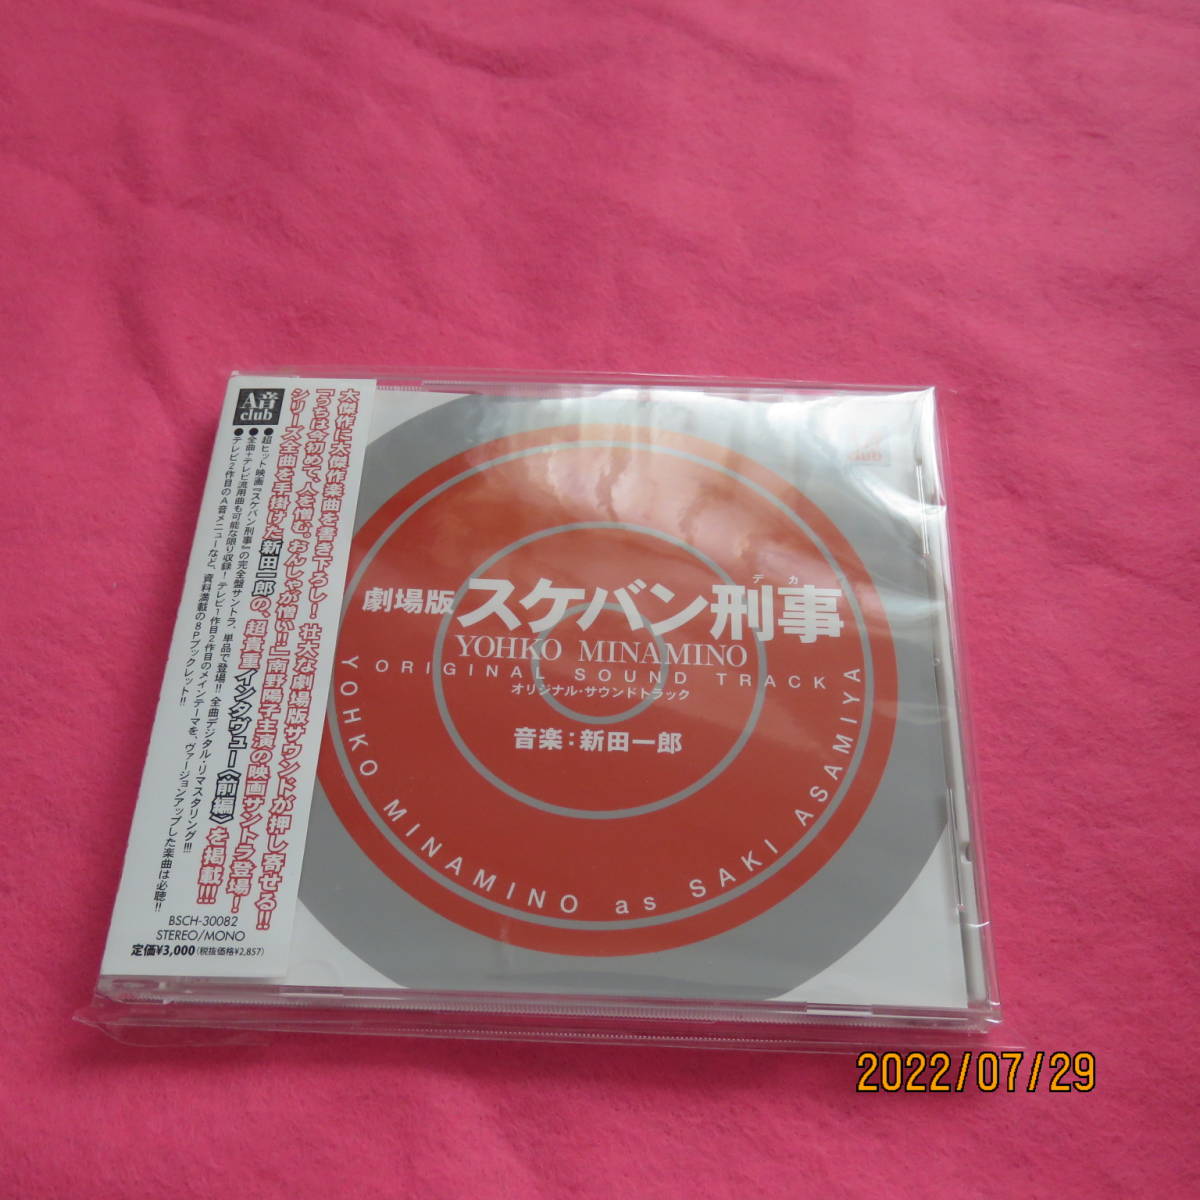 劇場版・スケバン刑事 YOHKO MINAMINO オリジナル・サウンドトラック サントラ (アーティスト, 演奏) 形式: CD